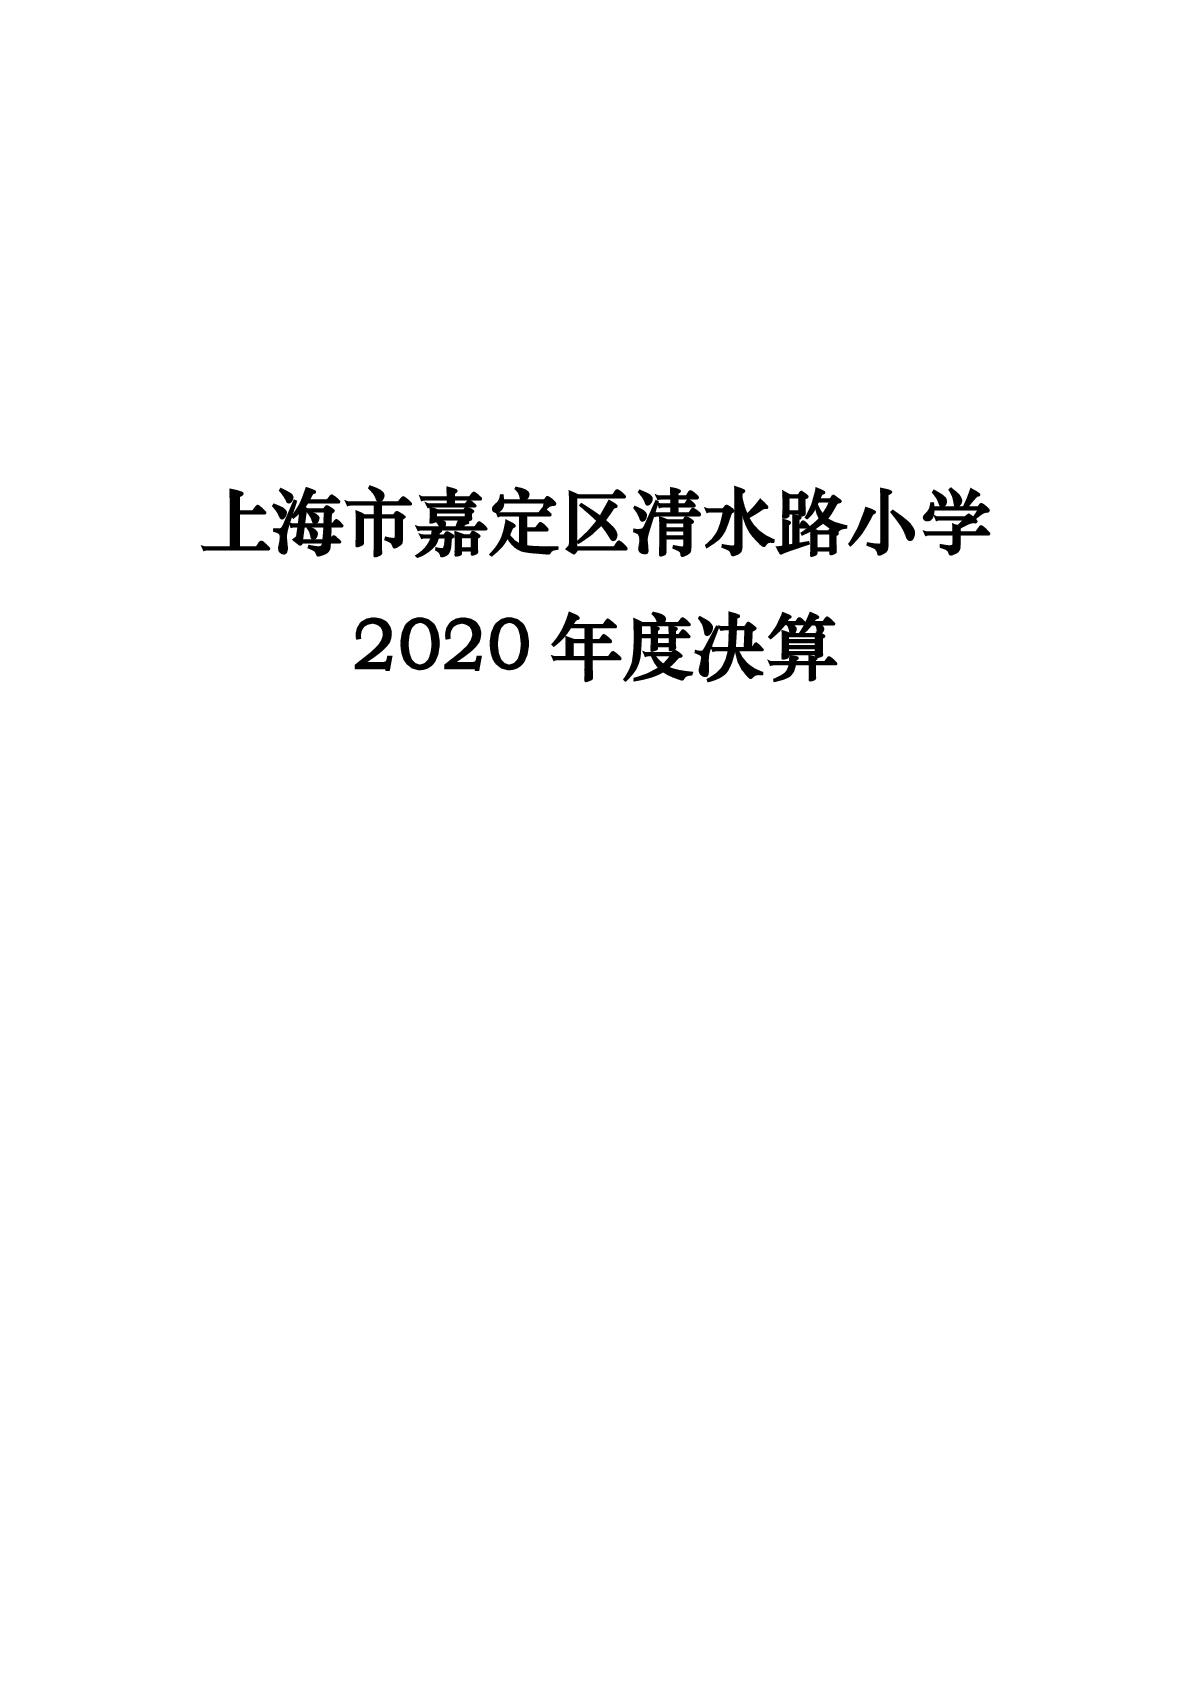 015上海市嘉定区清水路小学2020年度决算-001.jpg